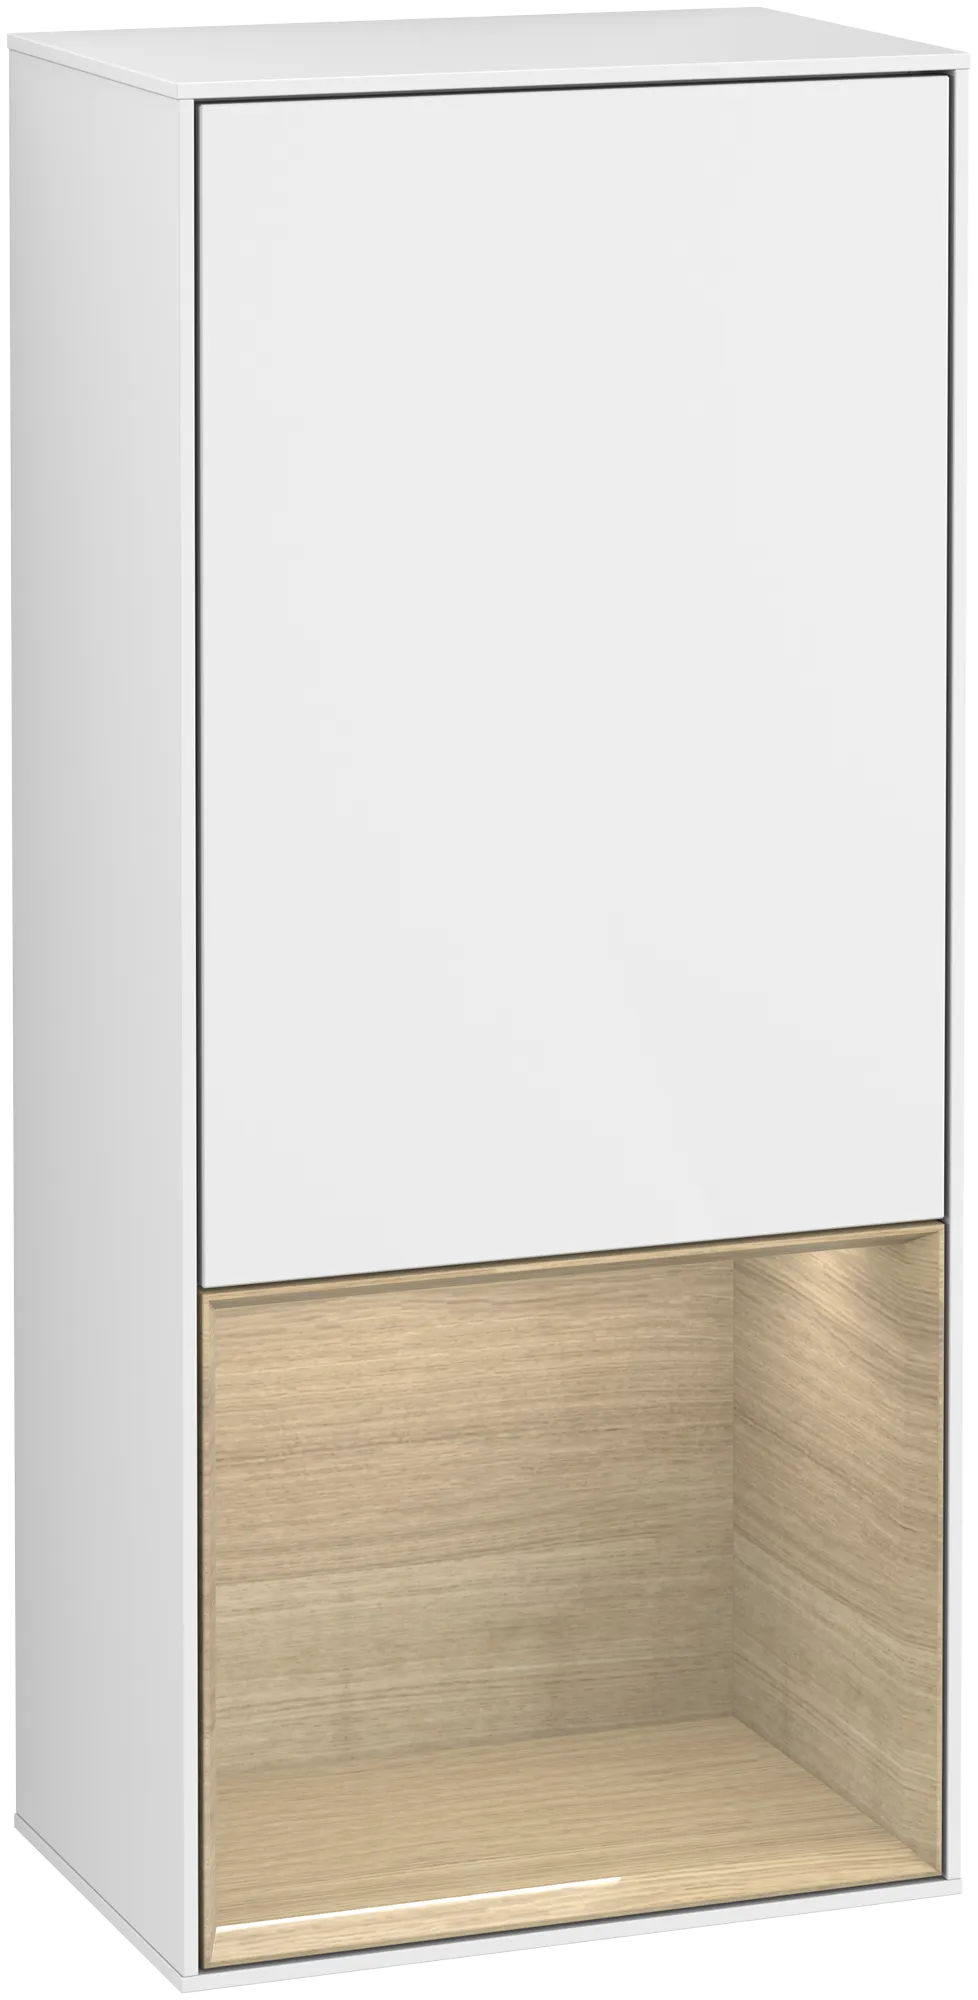 Bild von VILLEROY BOCH Finion Seitenschrank, mit Beleuchtung, 1 Tür, 418 x 936 x 270 mm, Glossy White Lacquer / Oak Veneer #G550PCGF